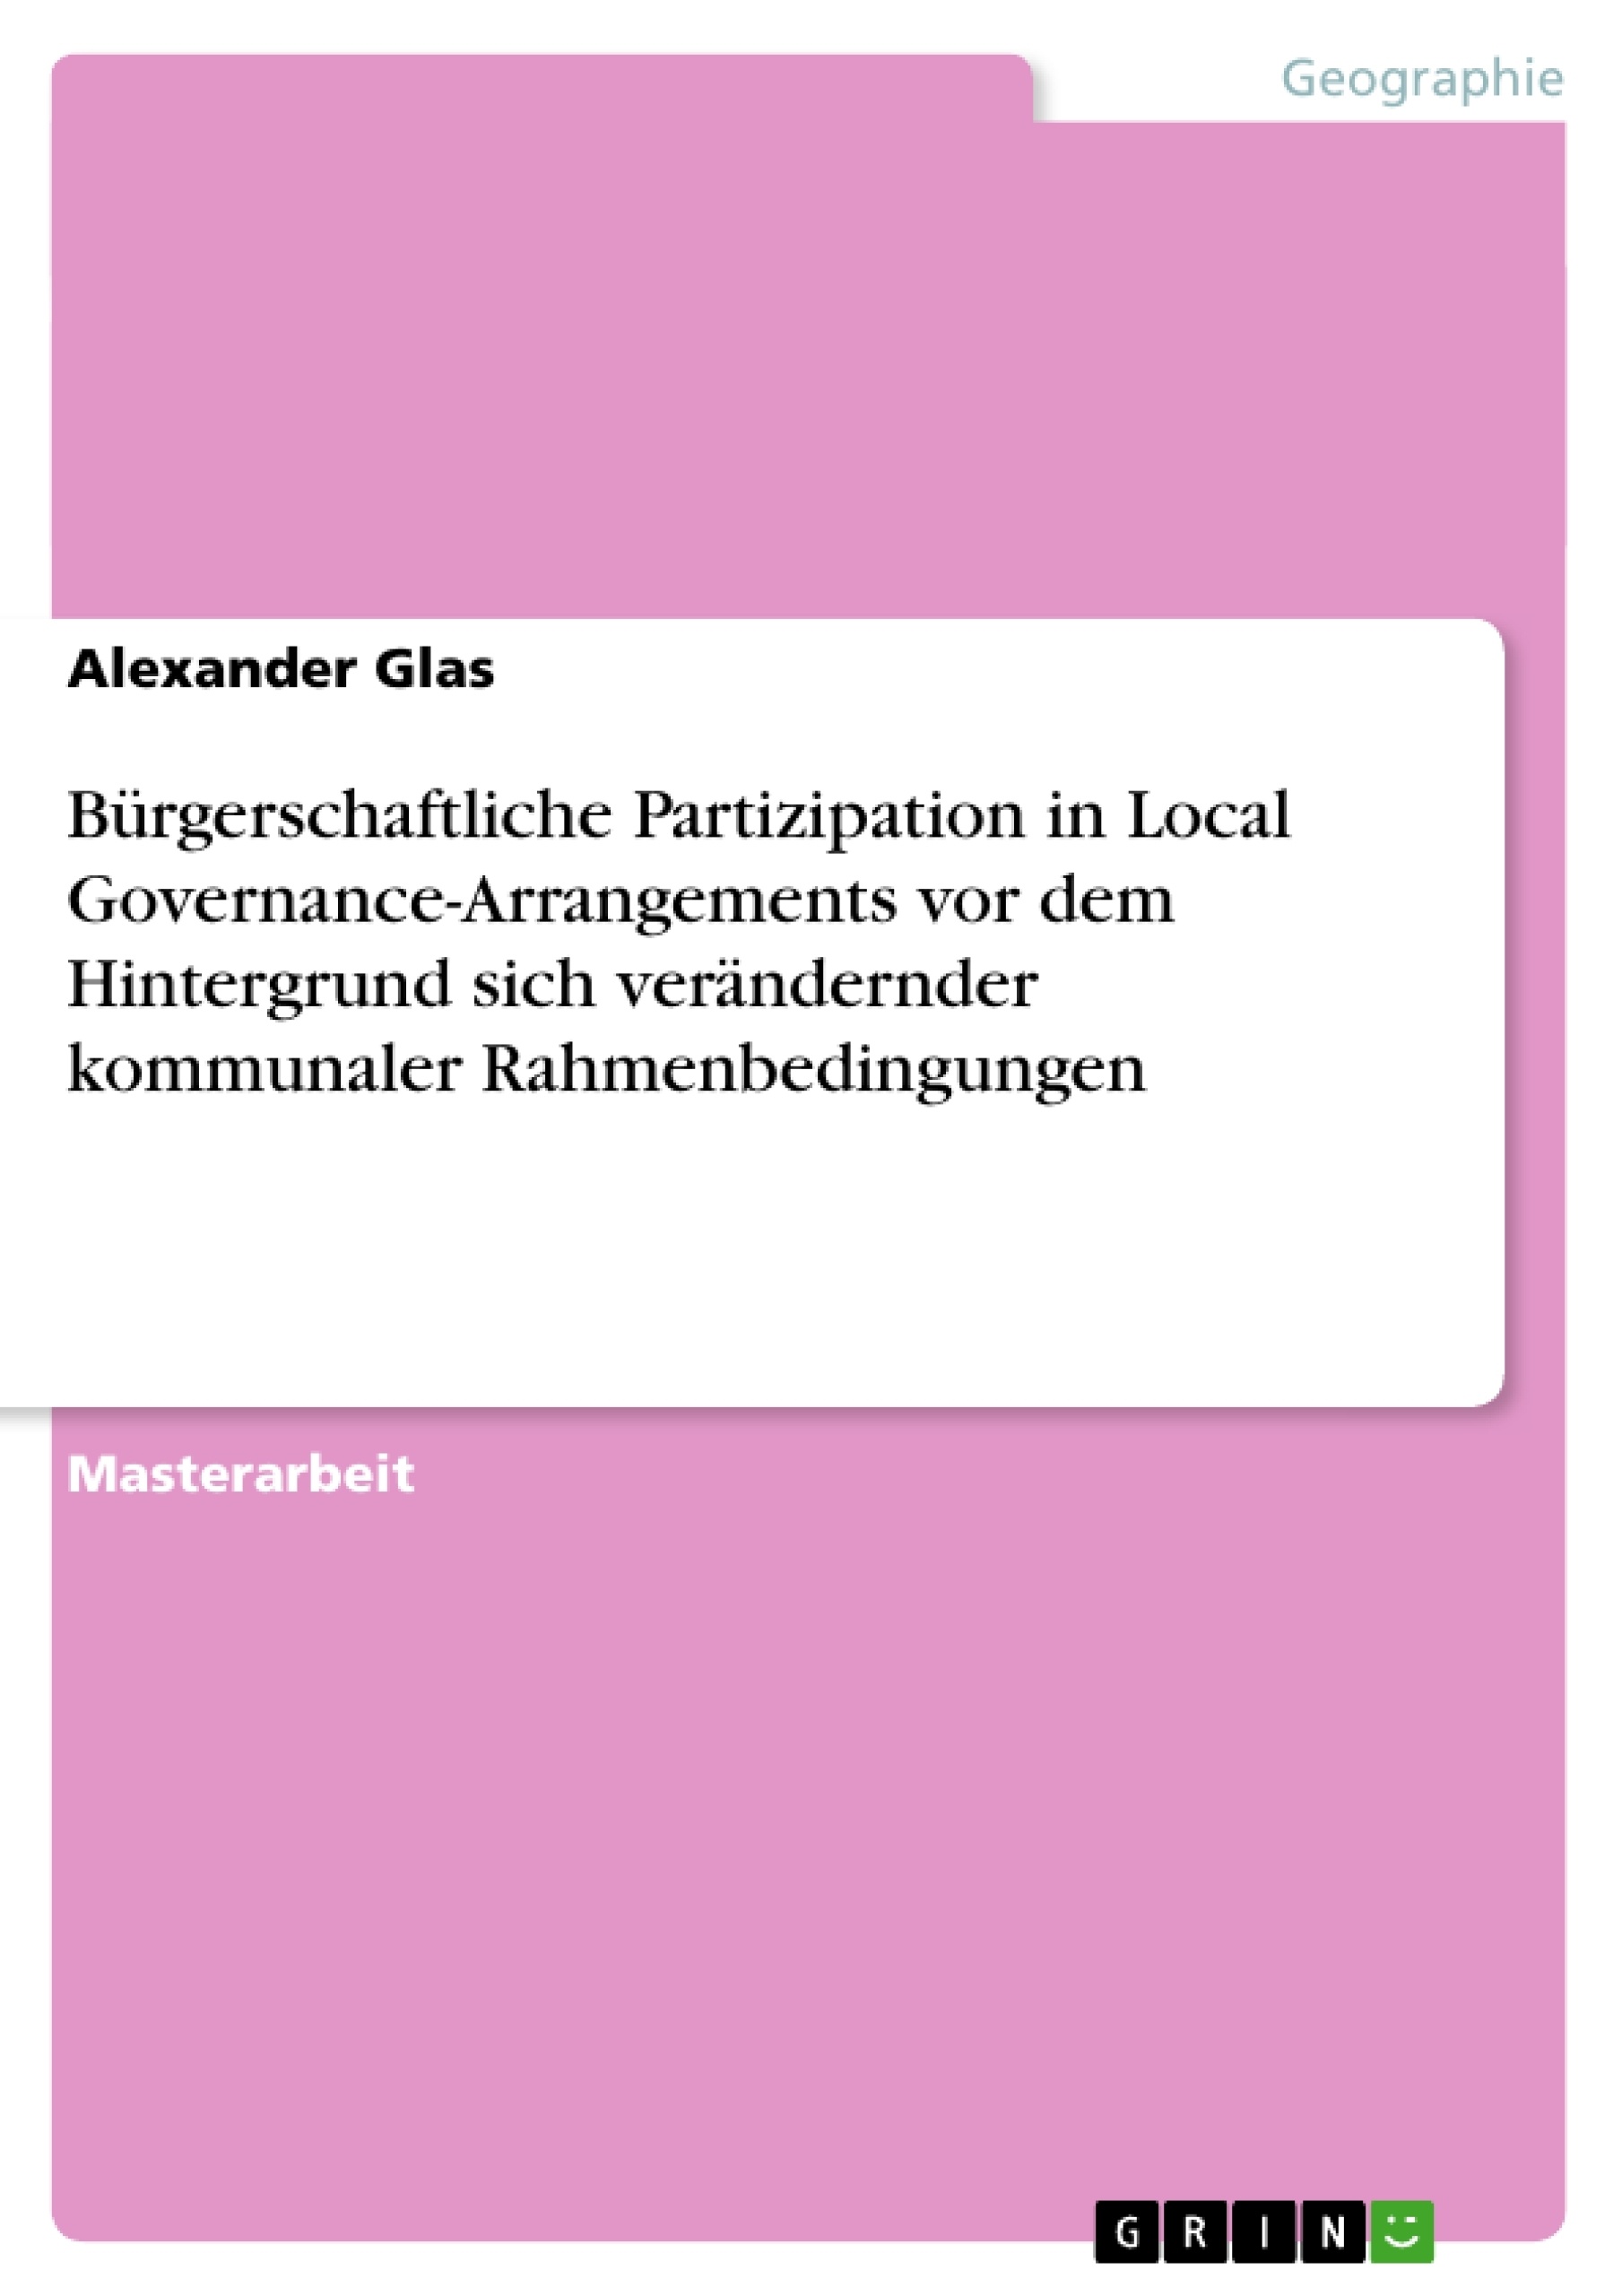 Título: Bürgerschaftliche Partizipation in Local Governance-Arrangements vor dem Hintergrund sich verändernder kommunaler Rahmenbedingungen